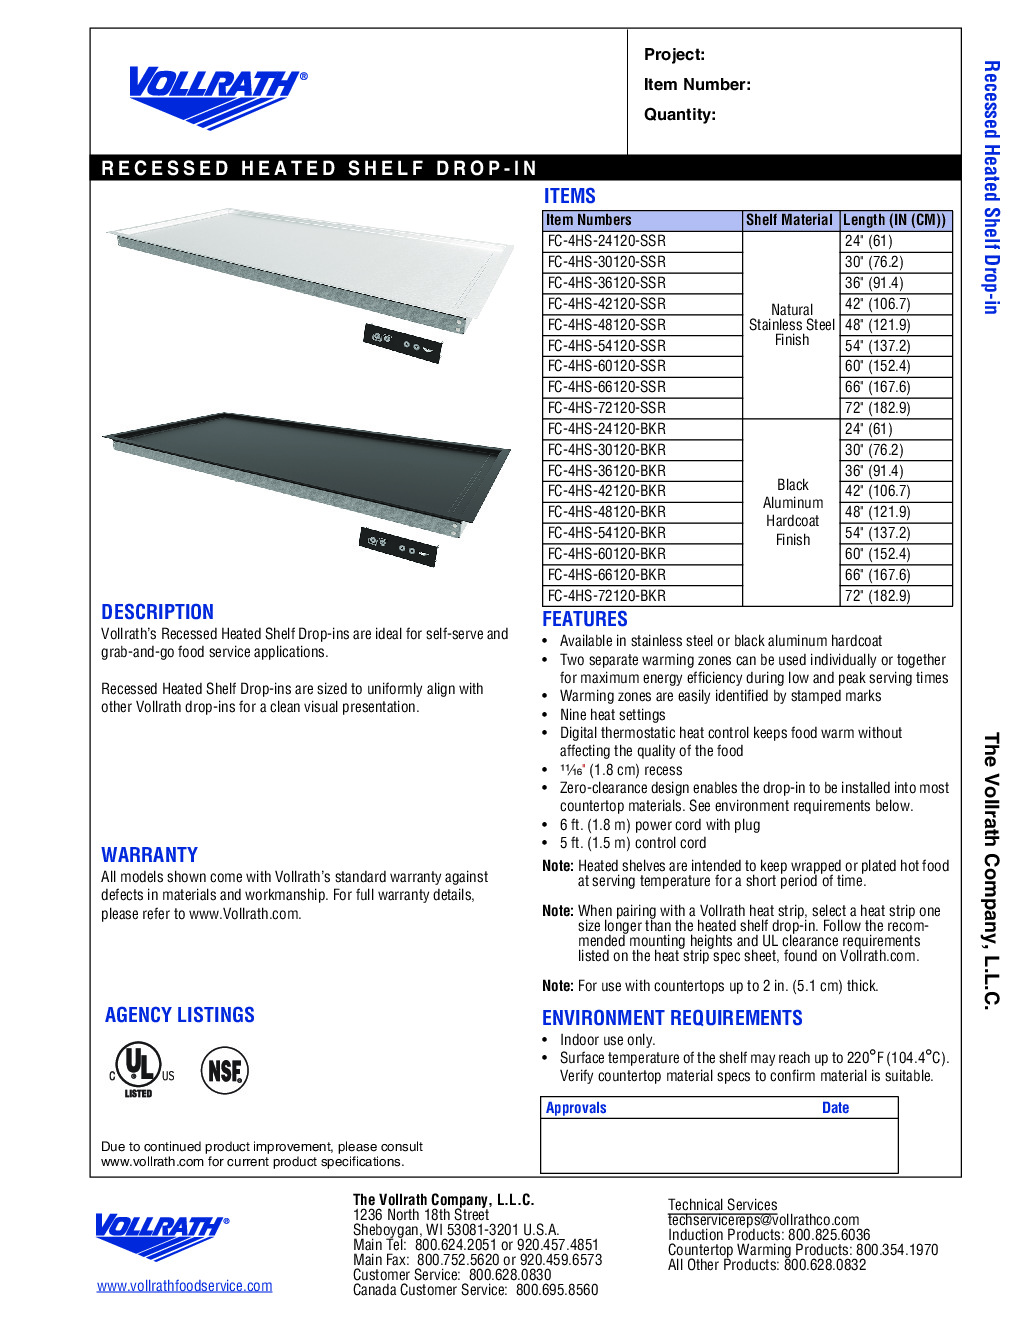 Vollrath FC-4HS-60120-BKR Heated Shelf Food Warmer